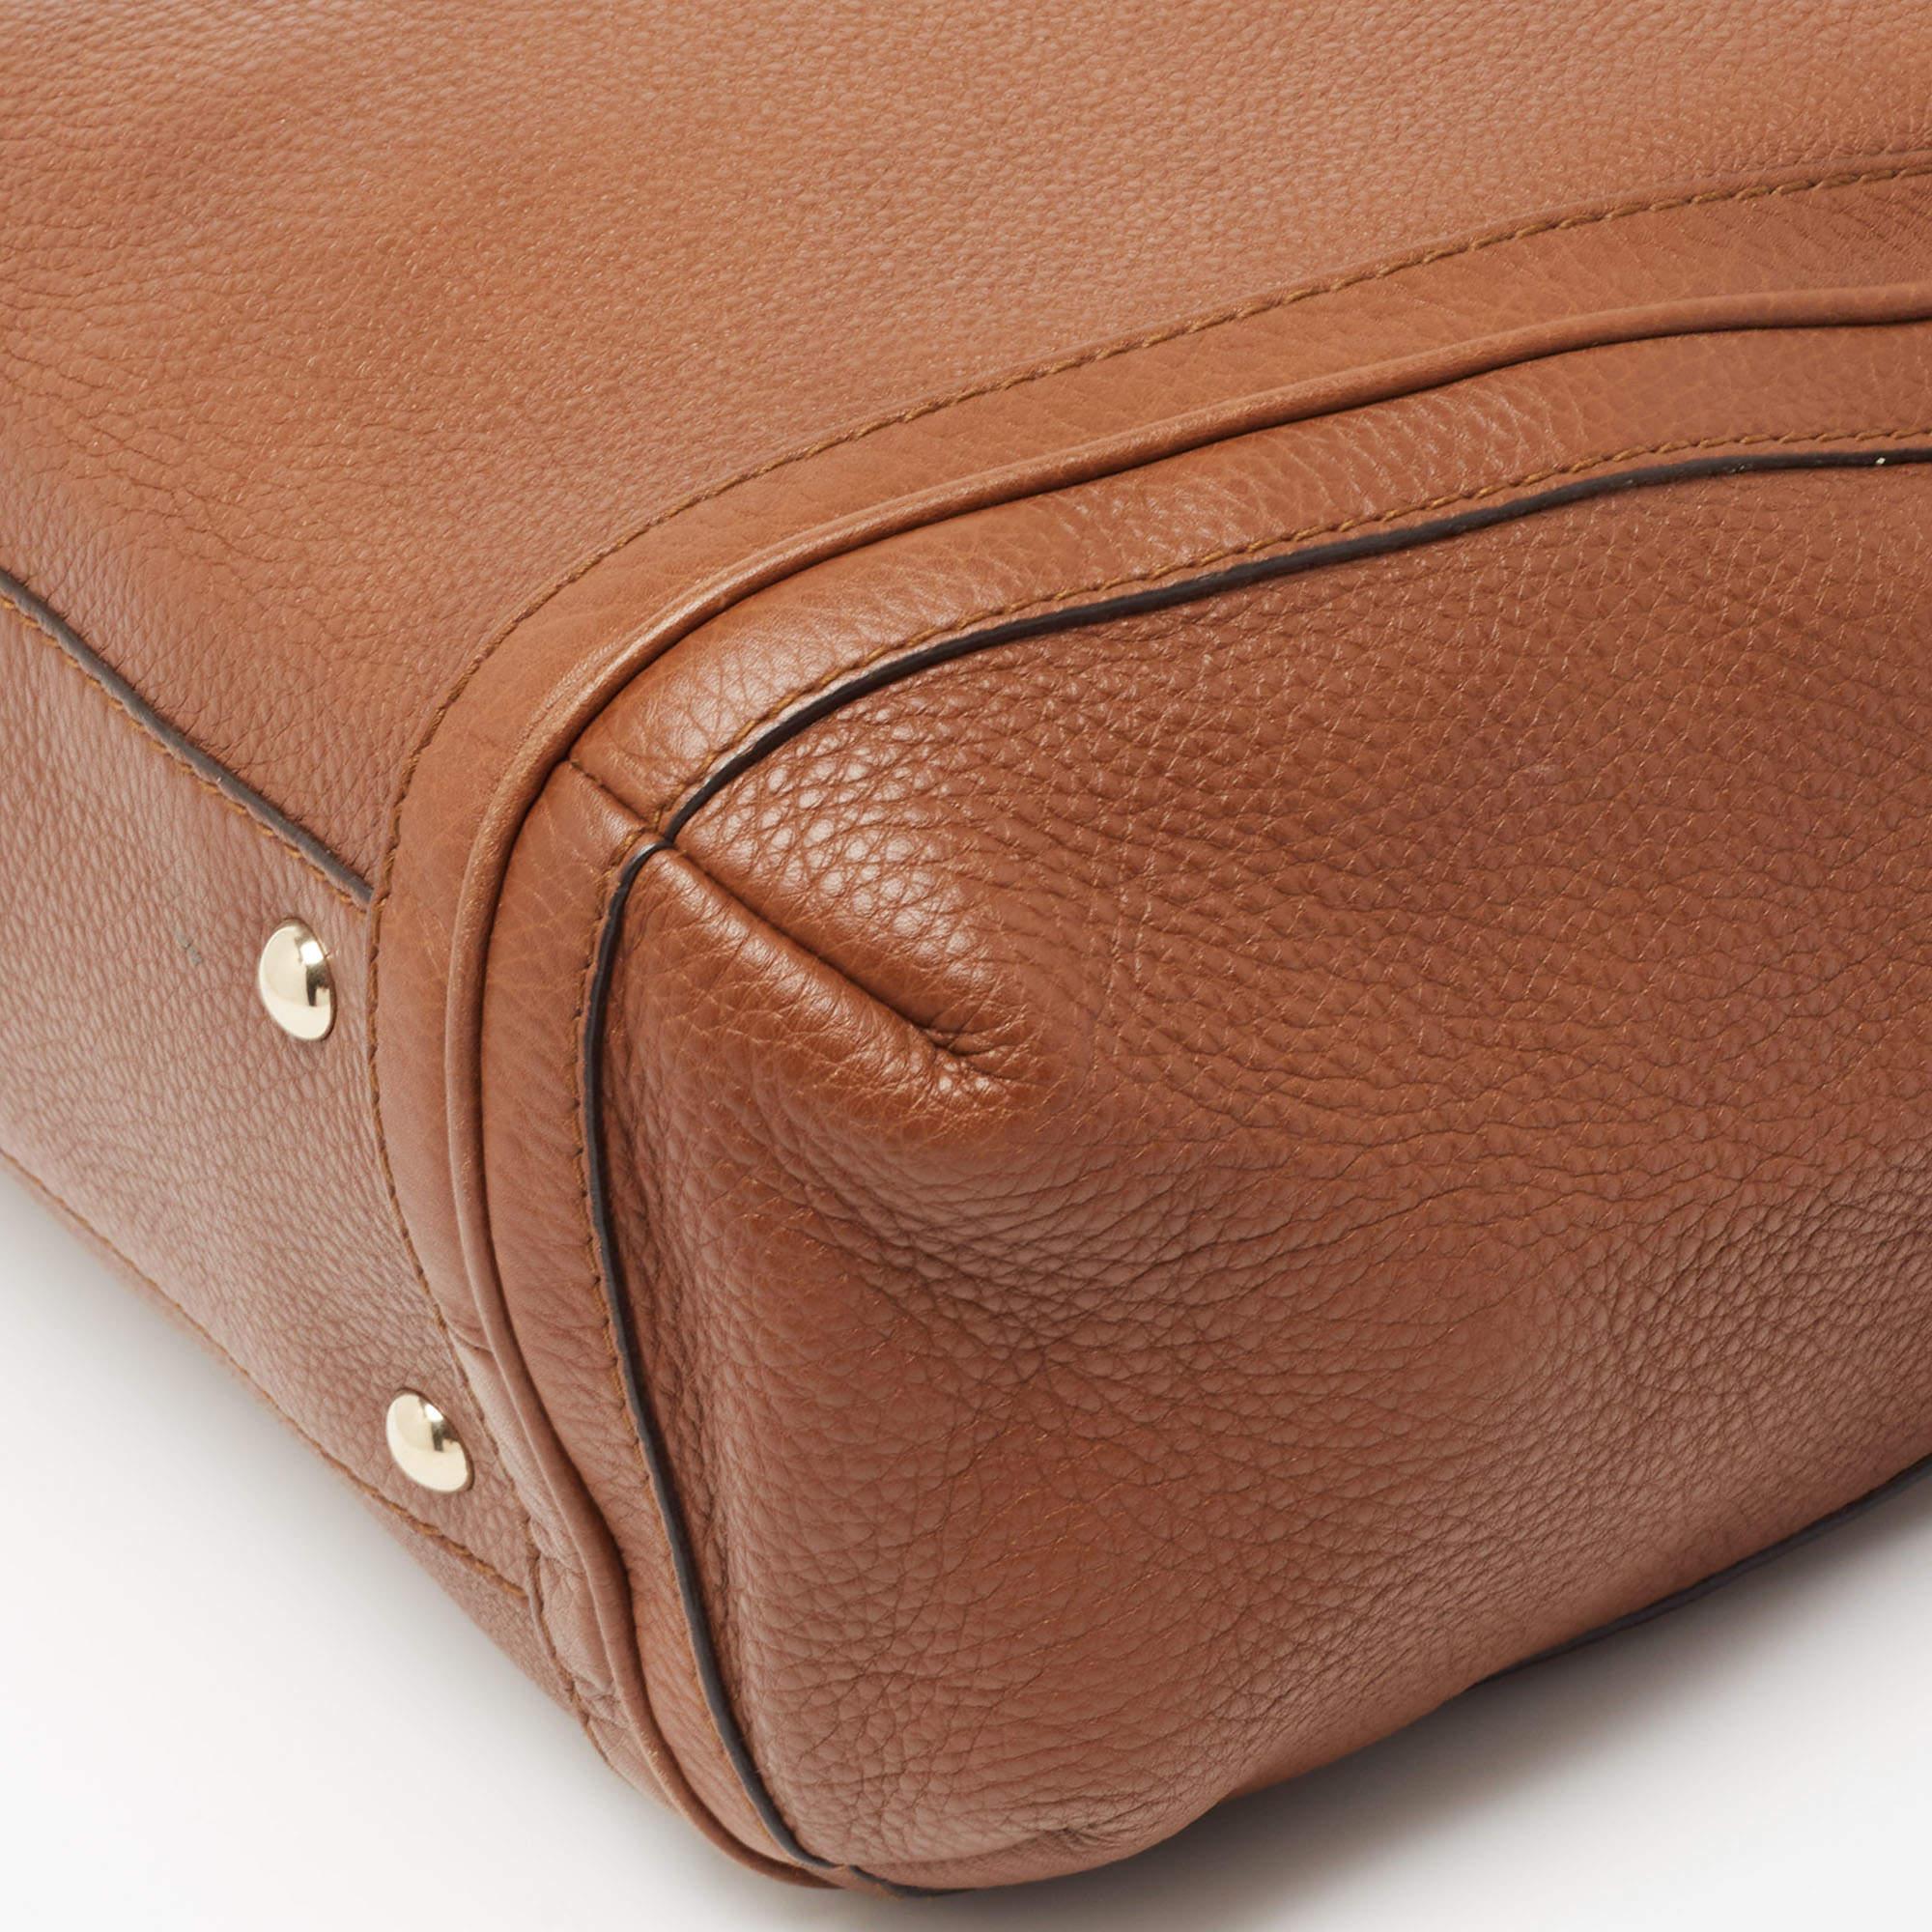 Stilvolle Handtaschen hinterlassen immer einen modischen Eindruck. Kombinieren Sie diese Designer-Hobo mit Ihrer raffinierten Arbeitskleidung sowie mit schicken Freizeitlooks.

Enthält: Die Luxury Closet Verpackung